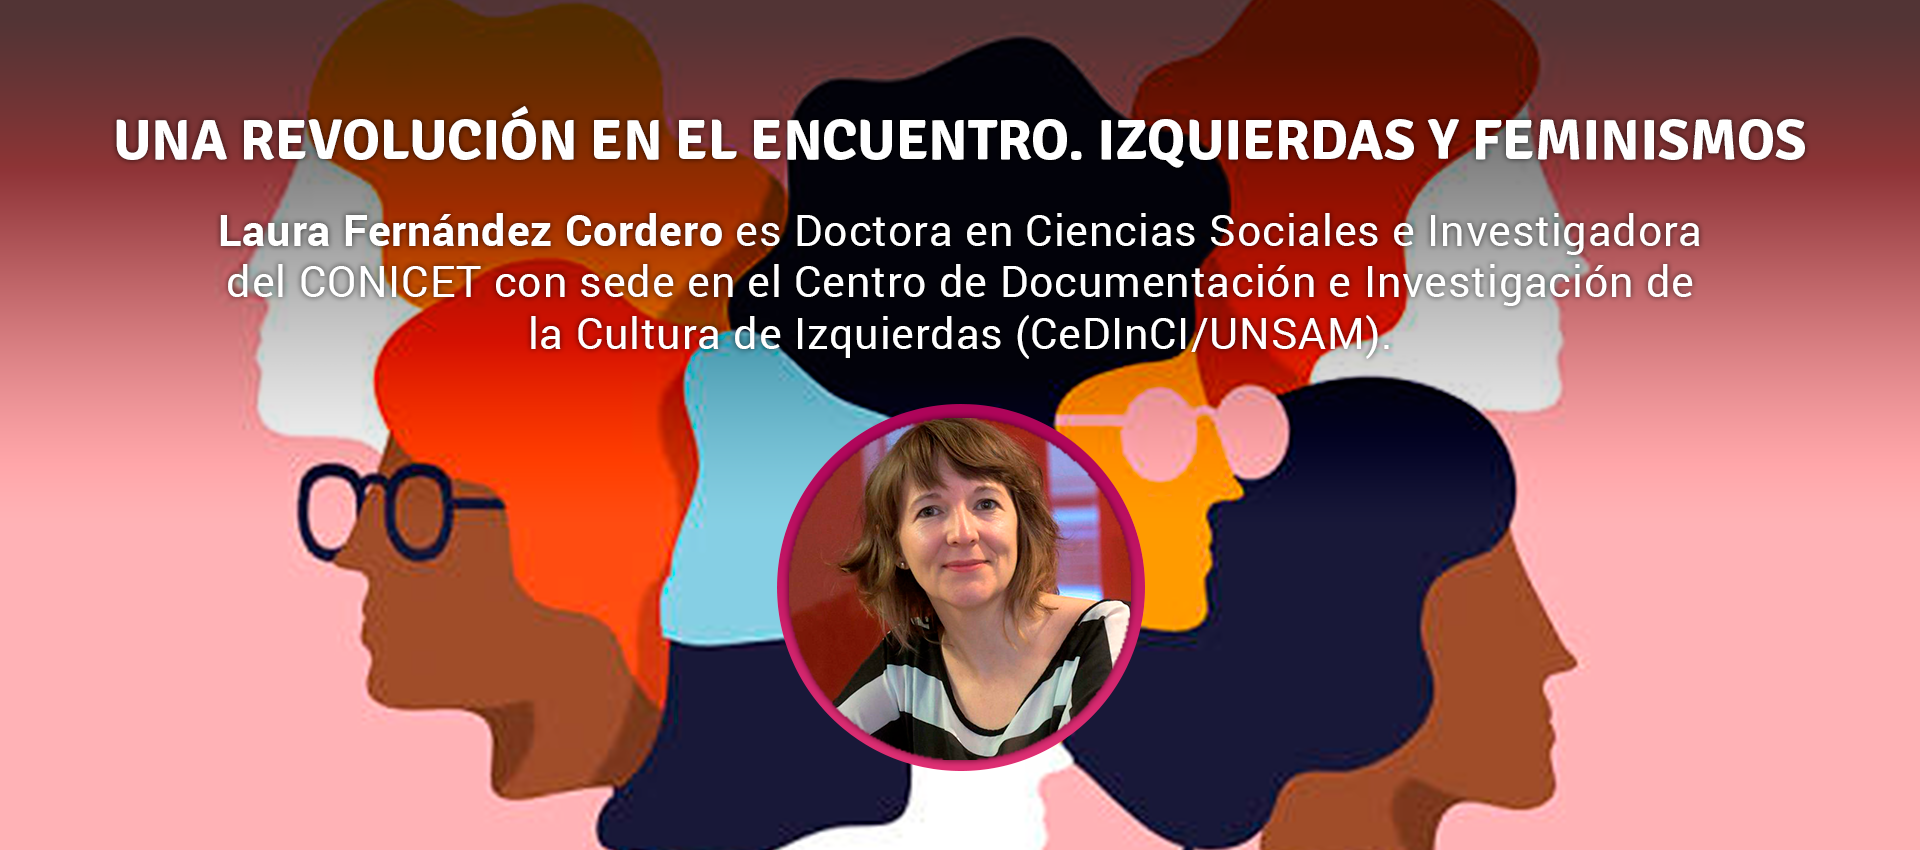 Laura Fernandez Cordero - UNA REVOLUCIÓN EN EL ENCUENTRO. IZQUIERDAS Y FEMINISMOS